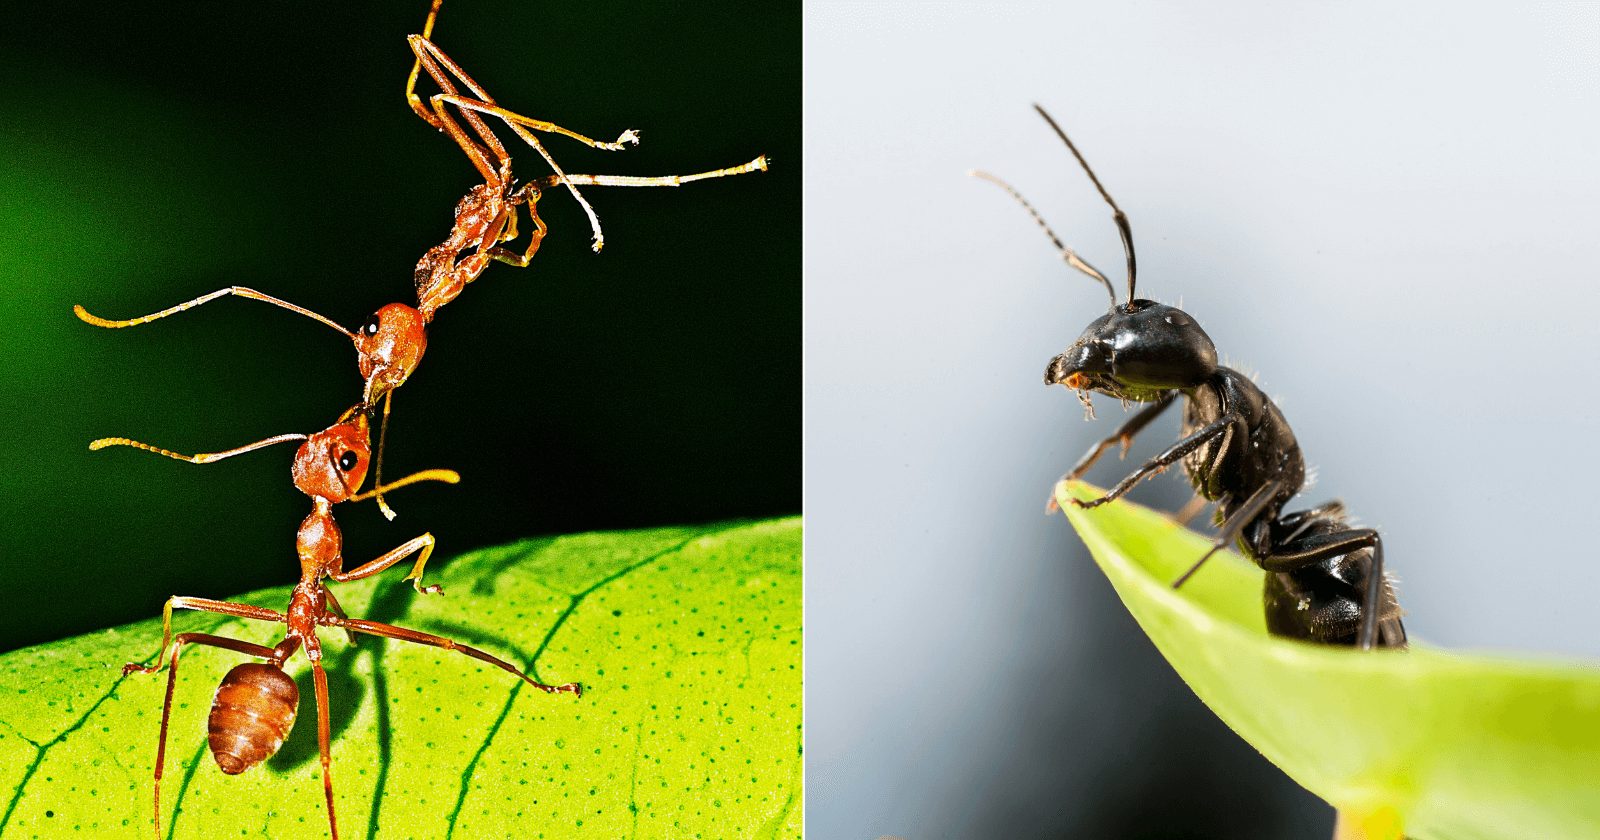 Non soñes con formigas: o significado espiritual detrás deste insecto